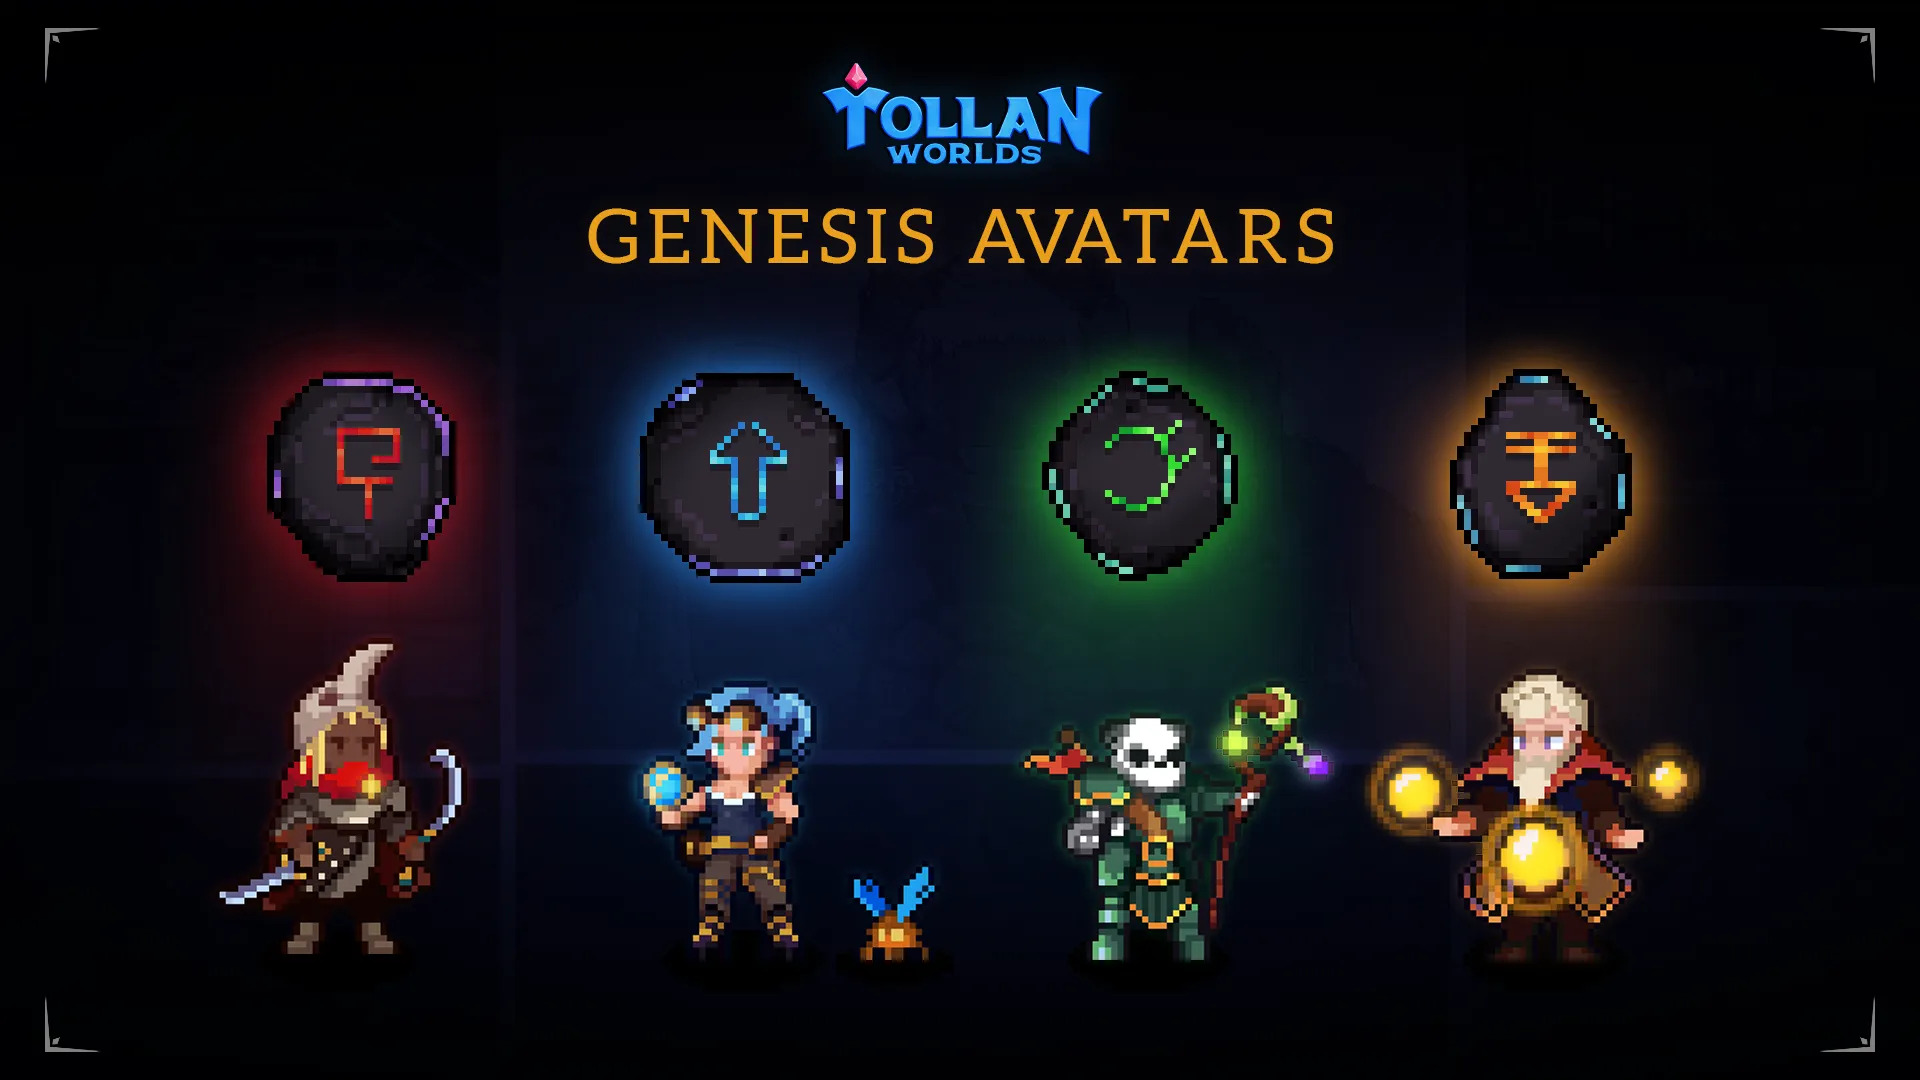 Hrajte, abyste vydělali za Tollan Worlds Avatar Mint